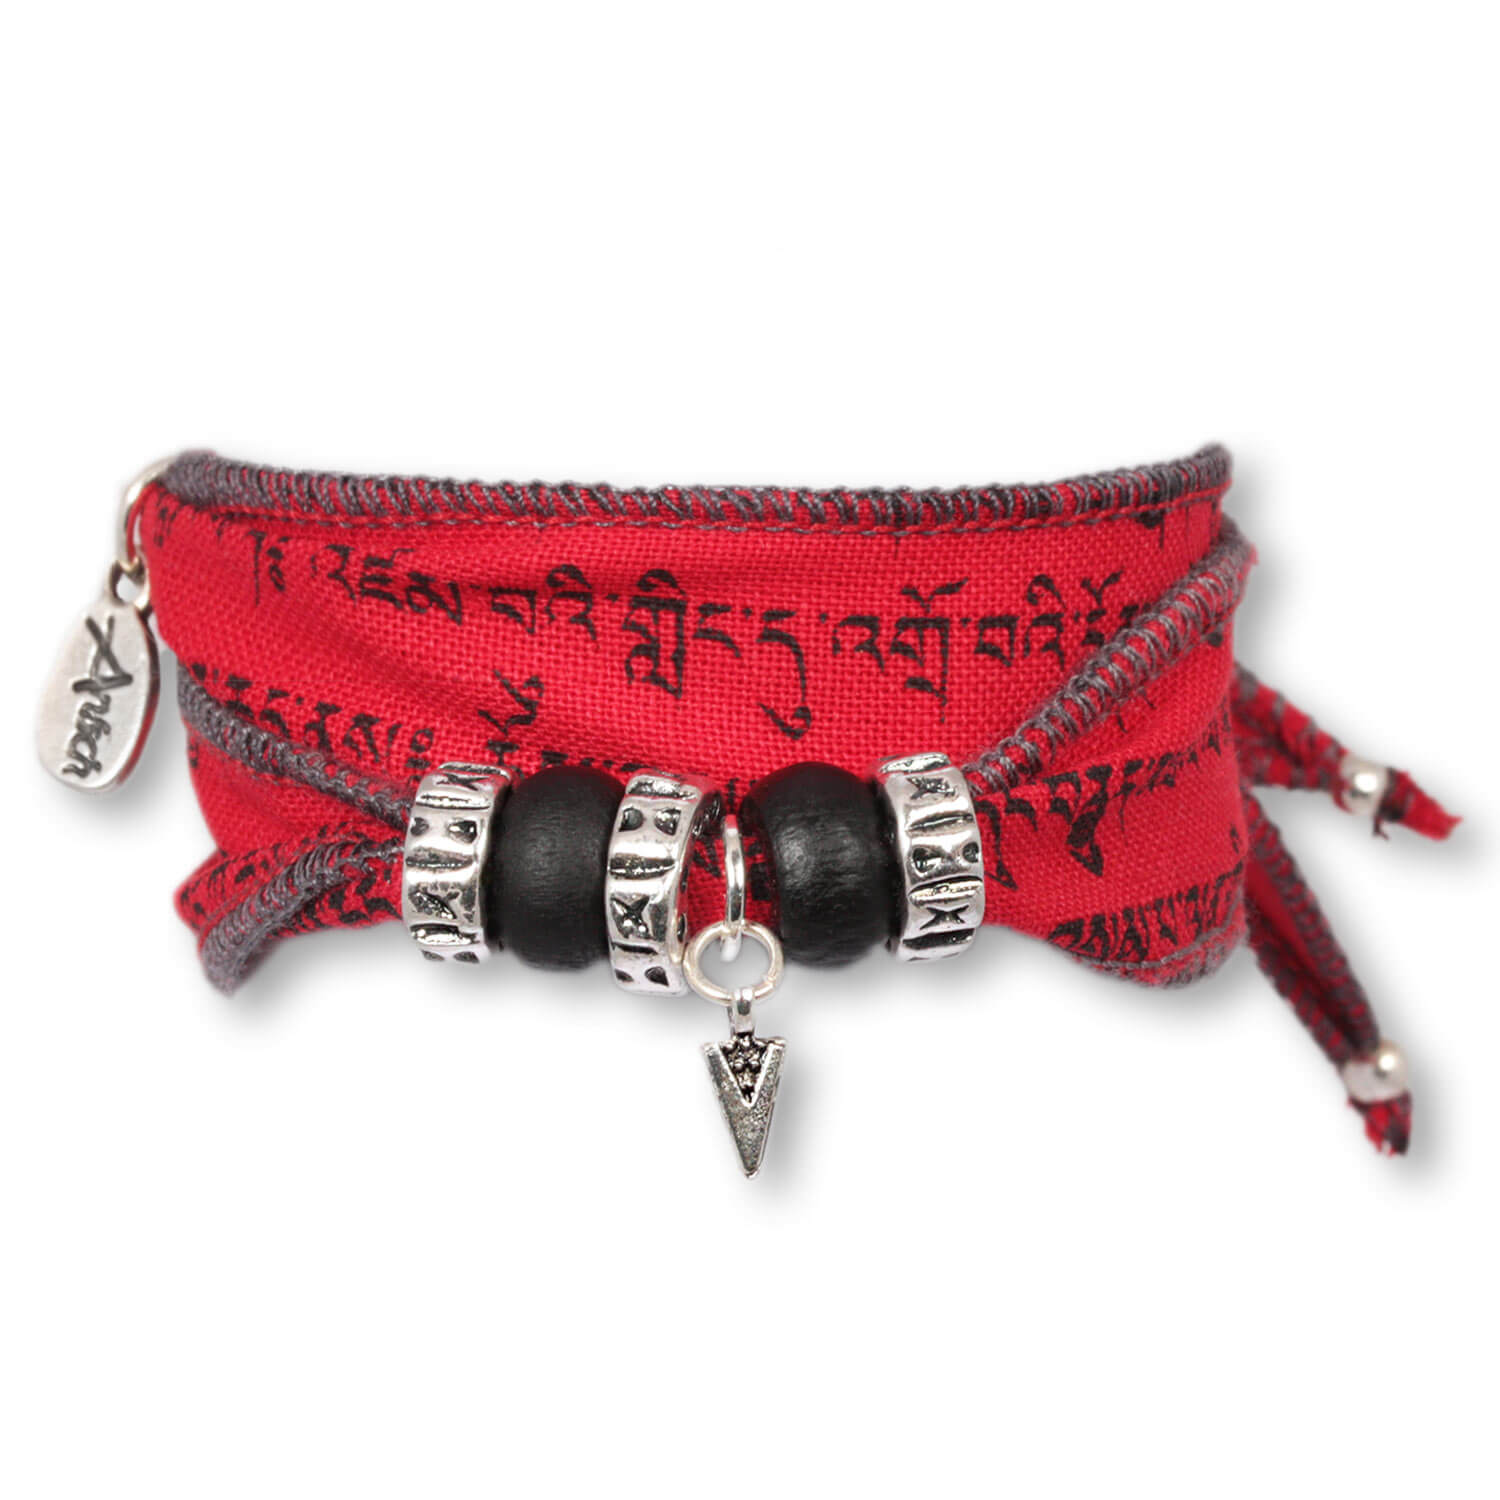 Fire Arrow - Tibetan Wish bracelet made from Tibetan prayer flags